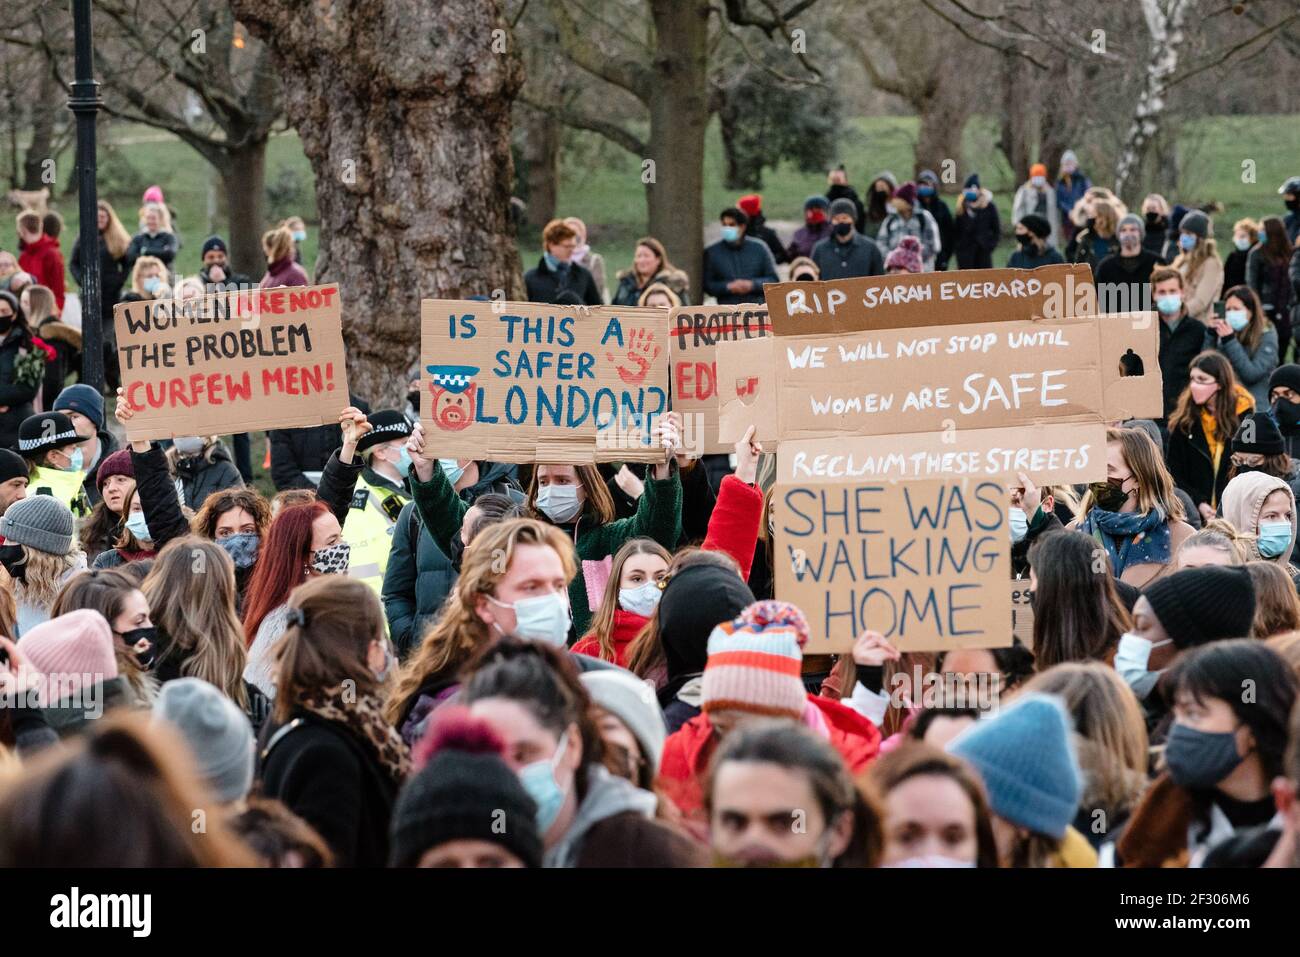 Londres, Royaume-Uni - 13 mars 2021 : veillée pour pleurer Sarah Everard tuant et protestant contre la violence sexuelle. Les femmes ne sont pas le problème, couvre-feu M. Banque D'Images